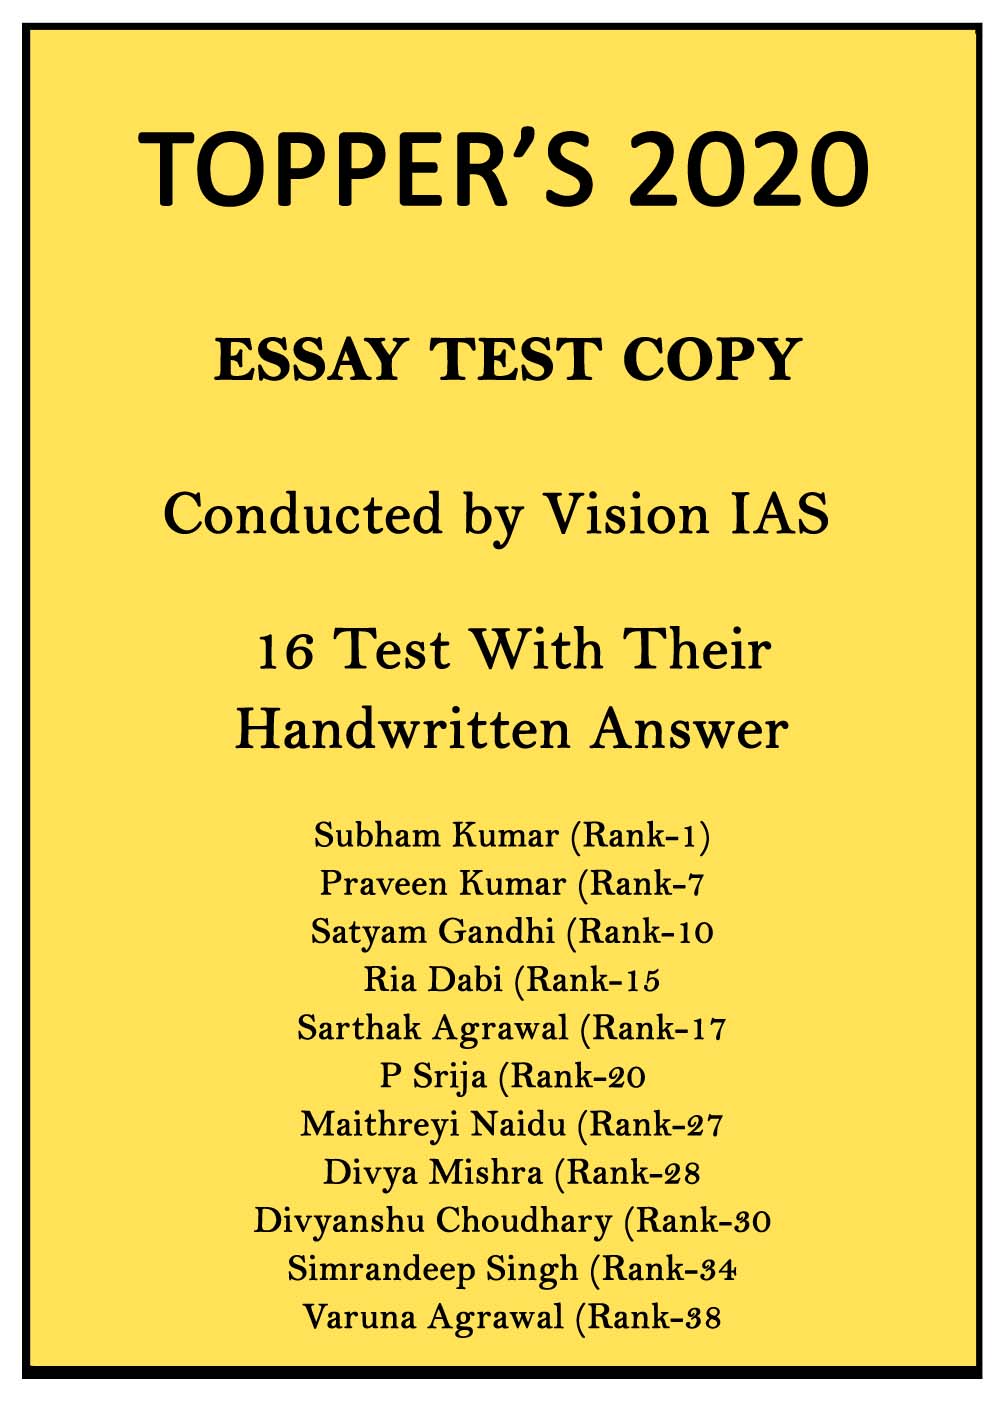 next ias essay test series